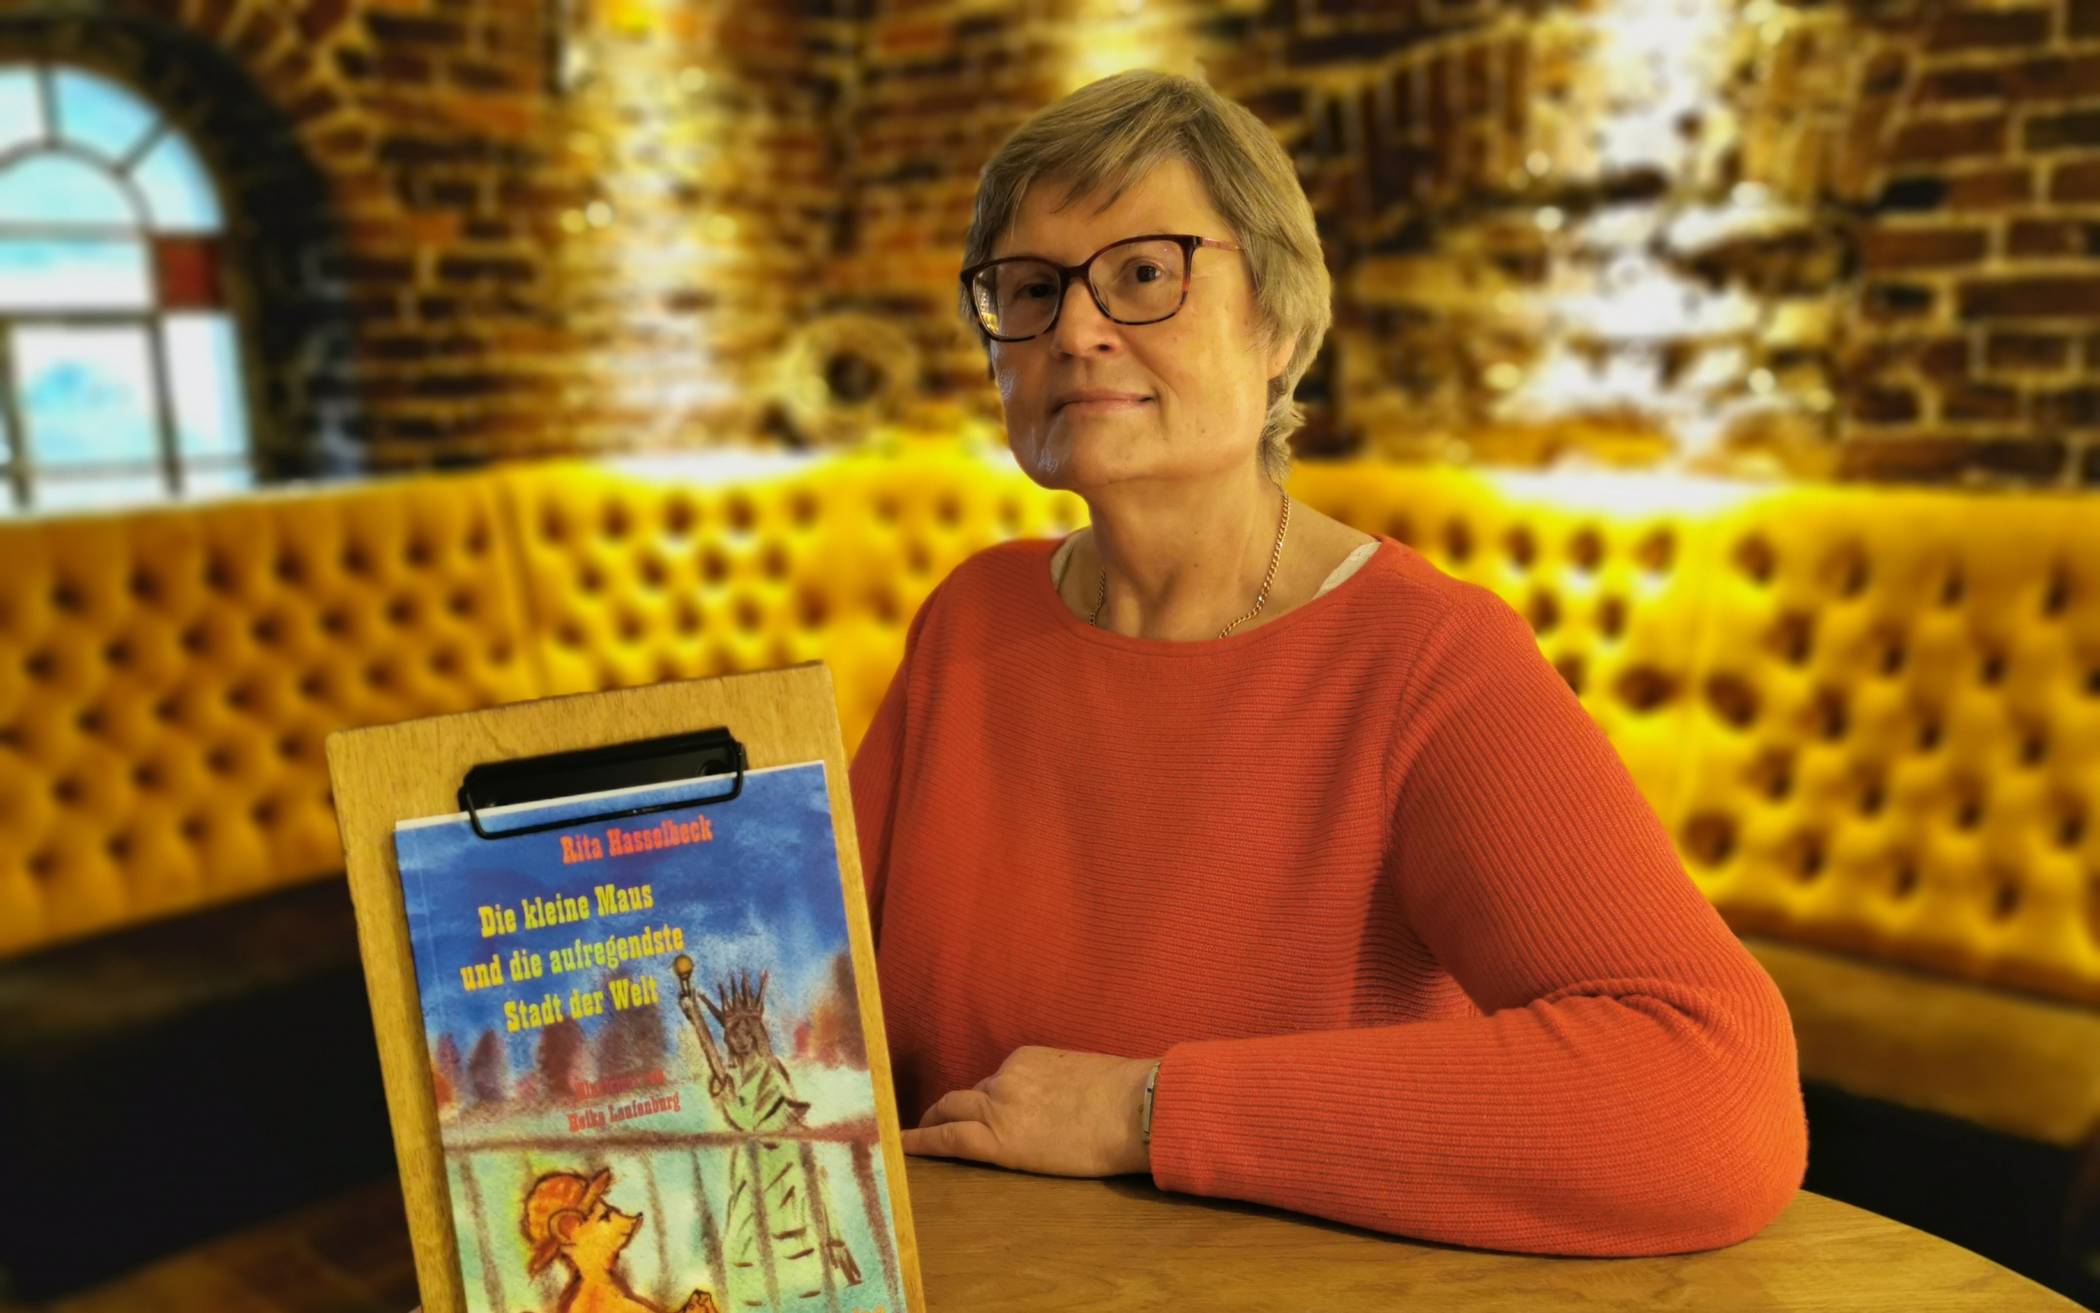  Rita Hasselbeck und ihr kürzlich erschienenes Buch „Die kleine Maus und die aufregendste Stadt der Welt“. 